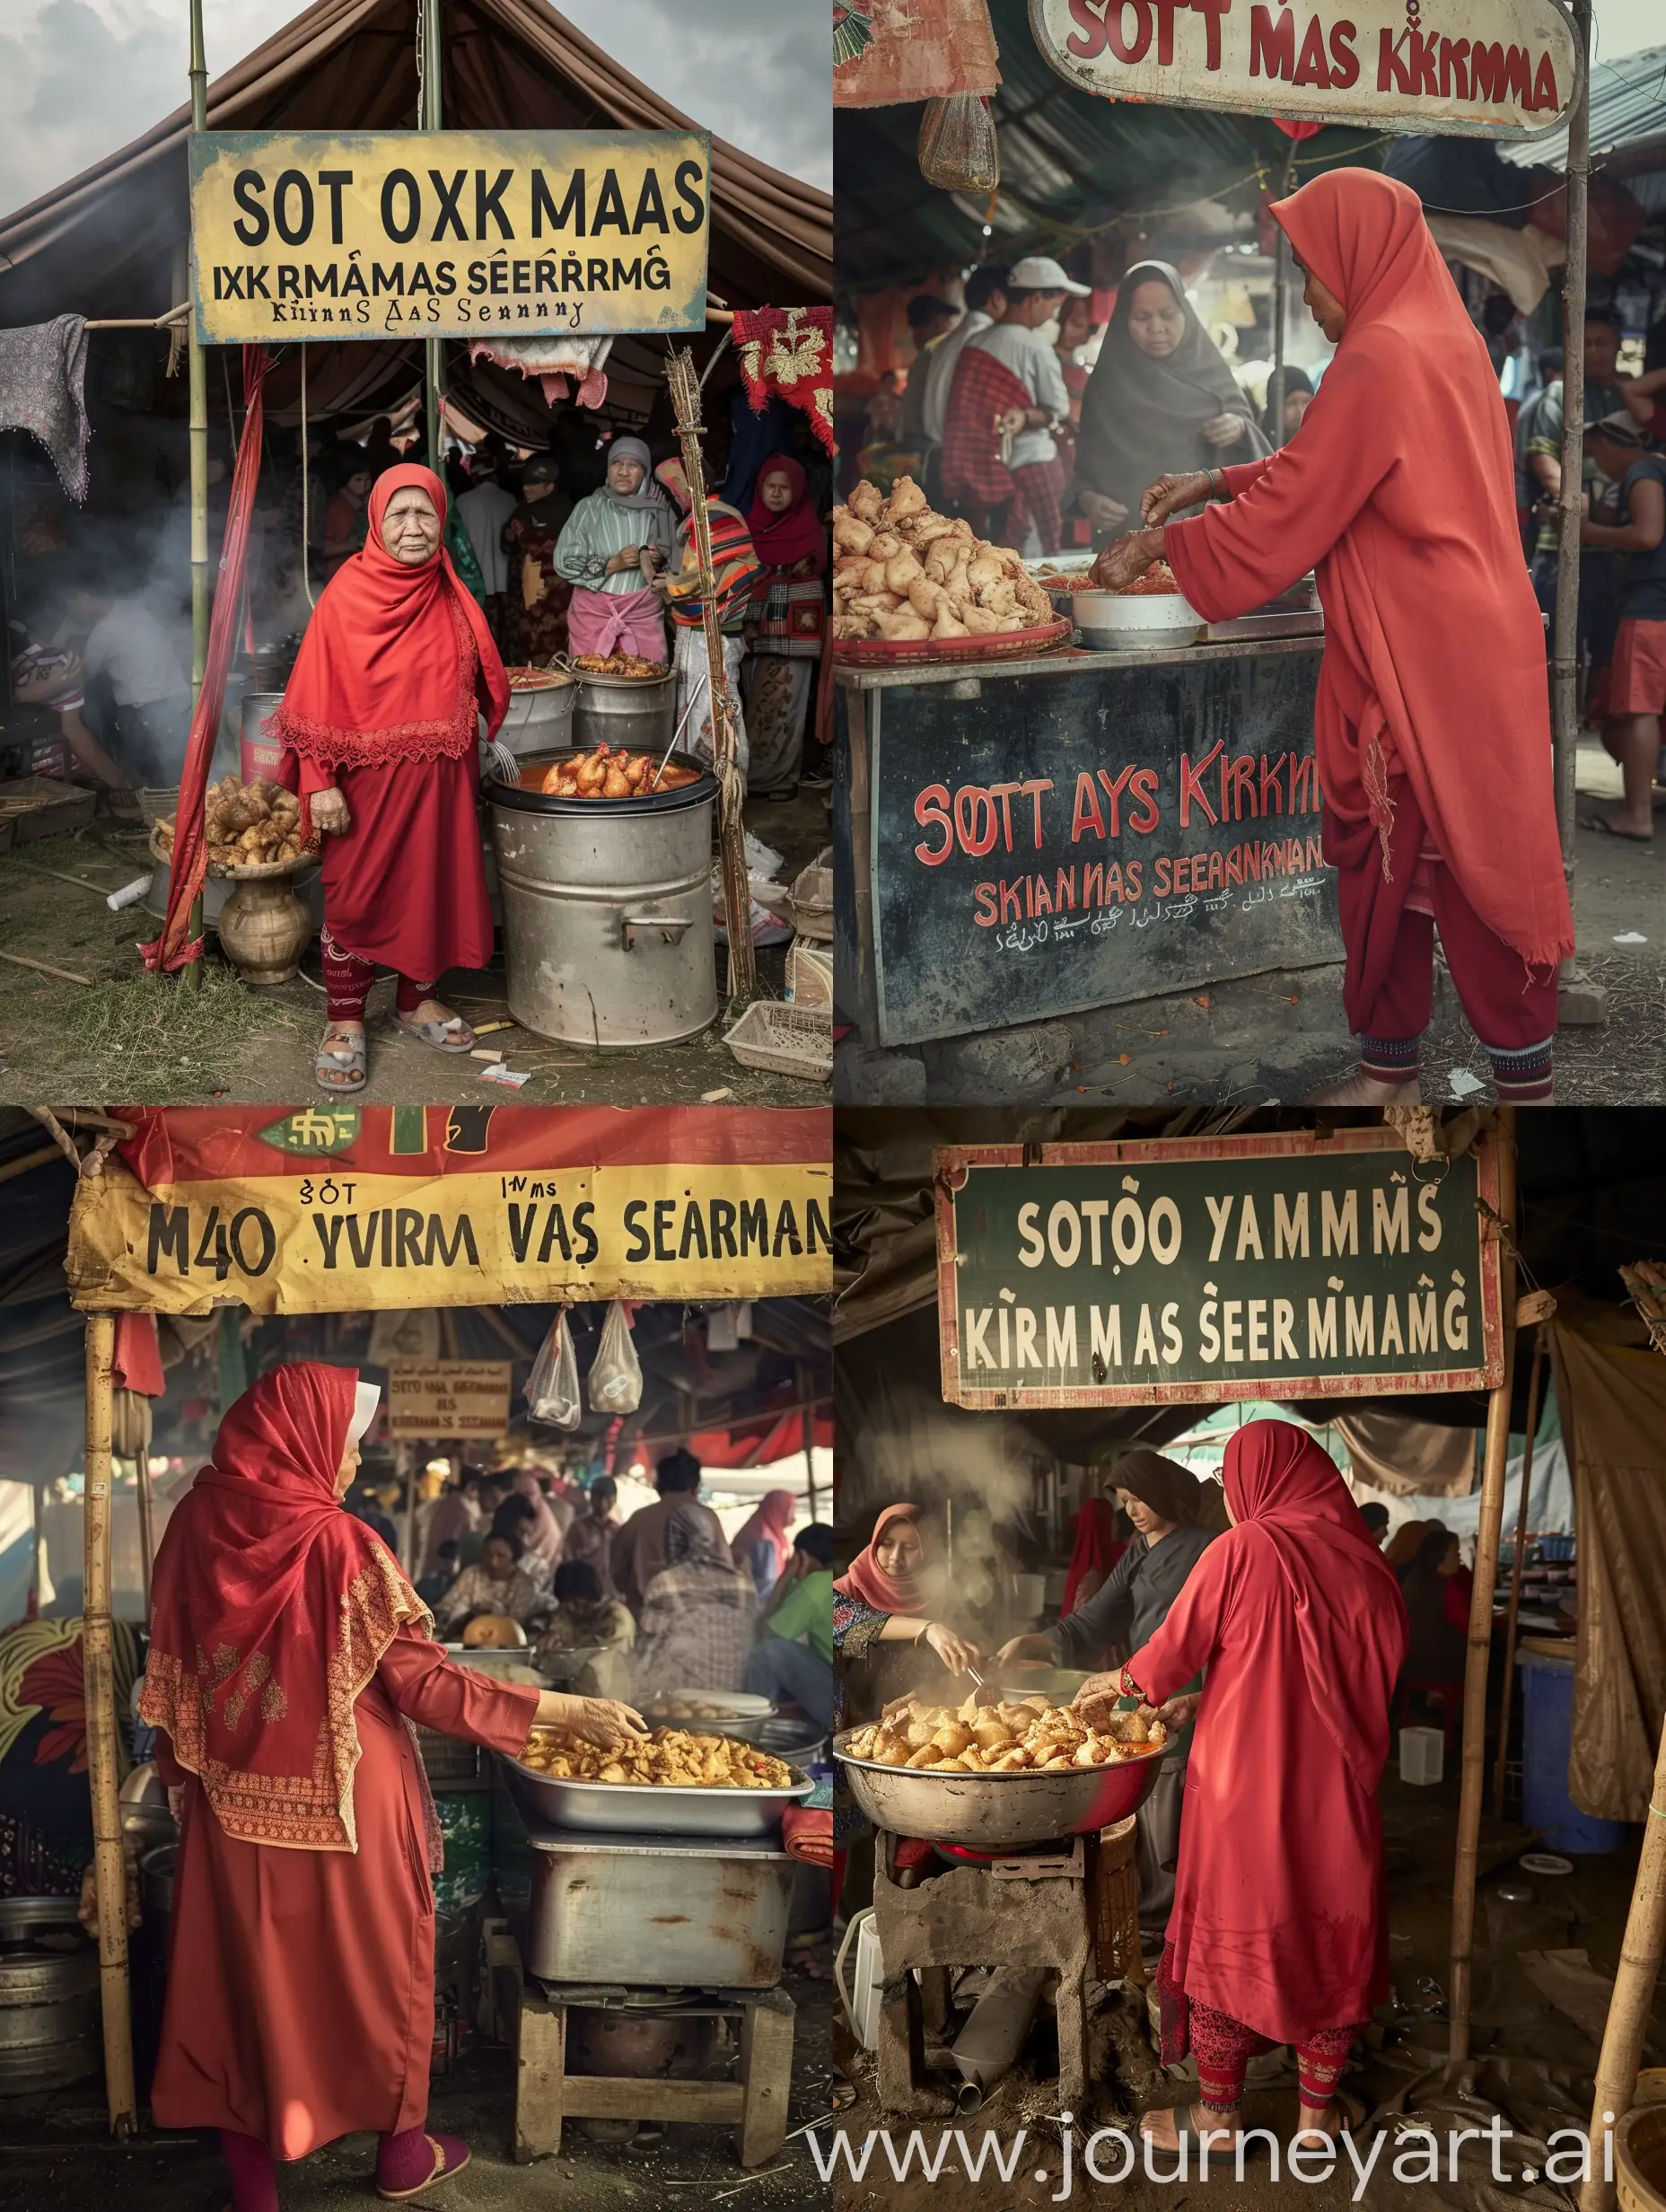 ibu ibu hijab berumur 40 tahun asal Indonesia mengenakan celemek merah dengan celana panjang dan sendal. ibu ibu itu sedang berjualan soto di warung tenda tersebut.wajah harus jelas dan detail. warung tenda mewah tersebut bertuliskan "SOTO AYAM MAS KIRMAN HAS SEMARANG"ramai pembeli.foto asli nyata.sangat realistis.